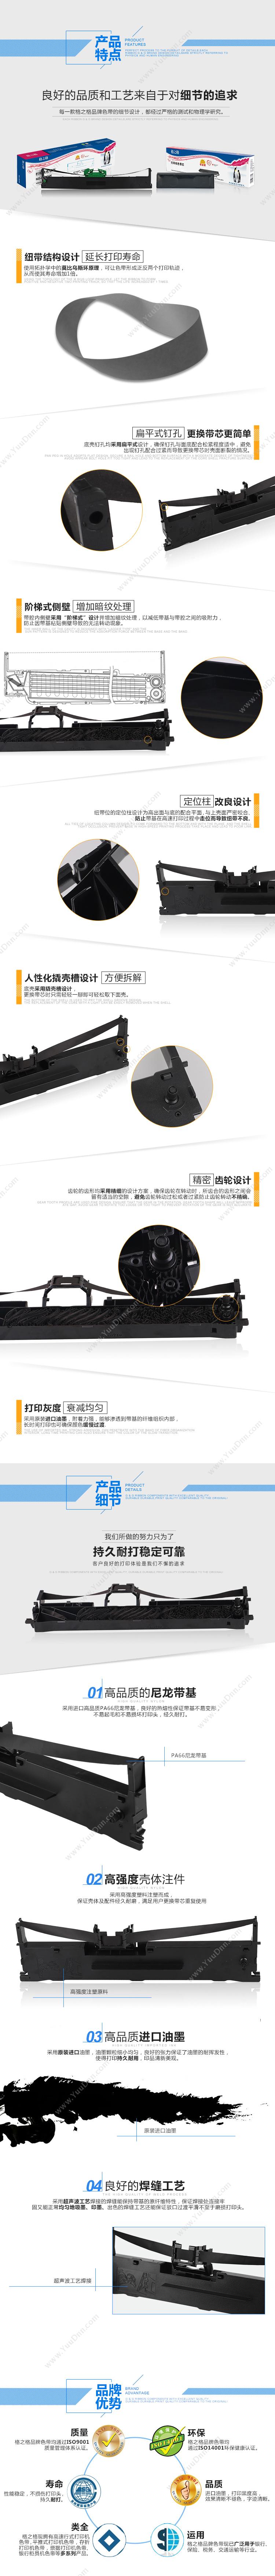 格之格 G&G ND-DPK800 色带架 400页（黑）（适用 FUJITSU DPK8580/800/810/880/890） 兼容色带架